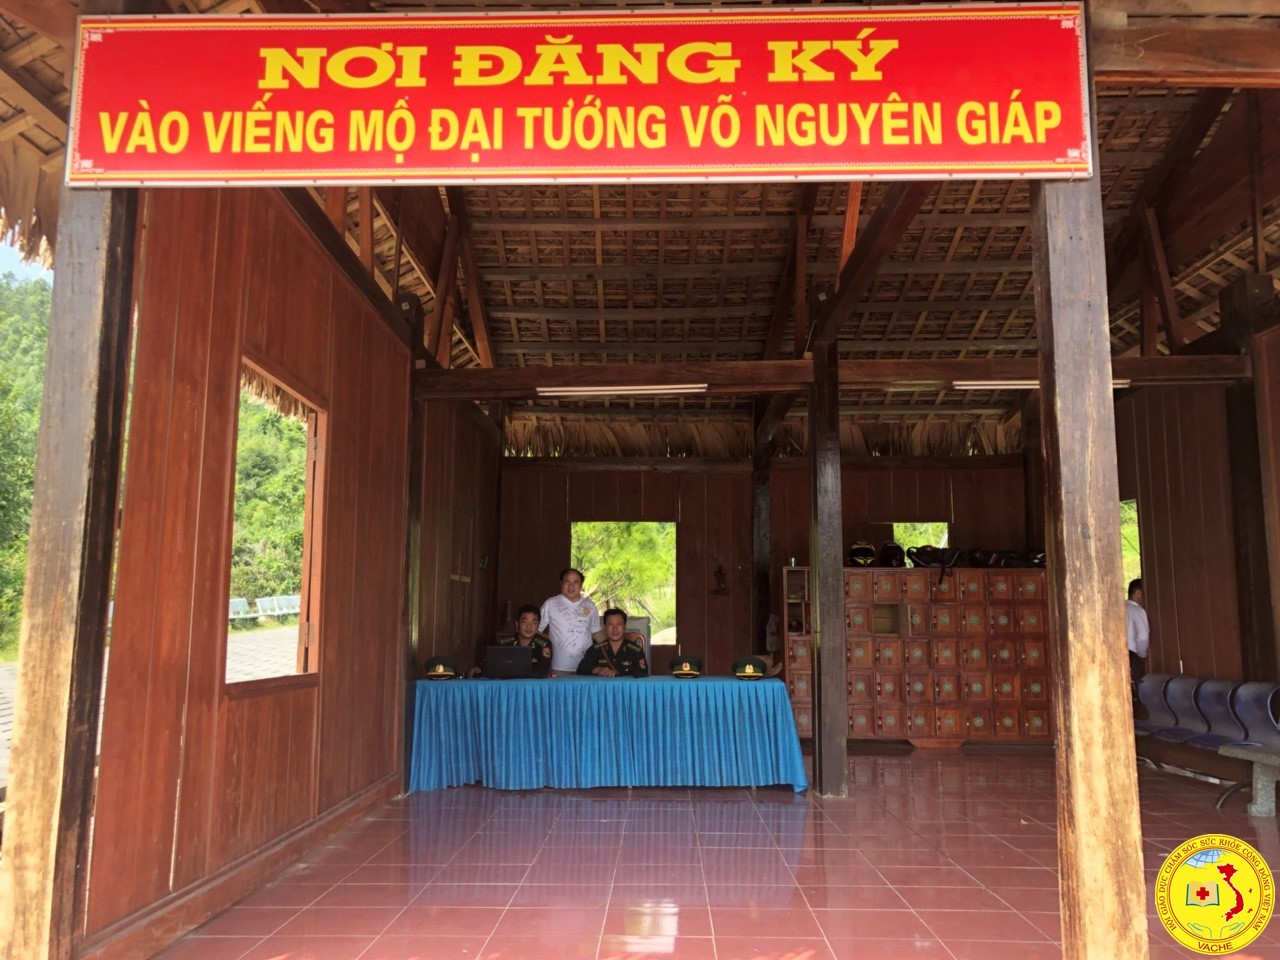 Hành trình Xuyên Việt vì sức khỏe cộng đồng đến Quảng Bình đăng ký viếng thăm mộ đại tướng Võ Nguyên Giáp